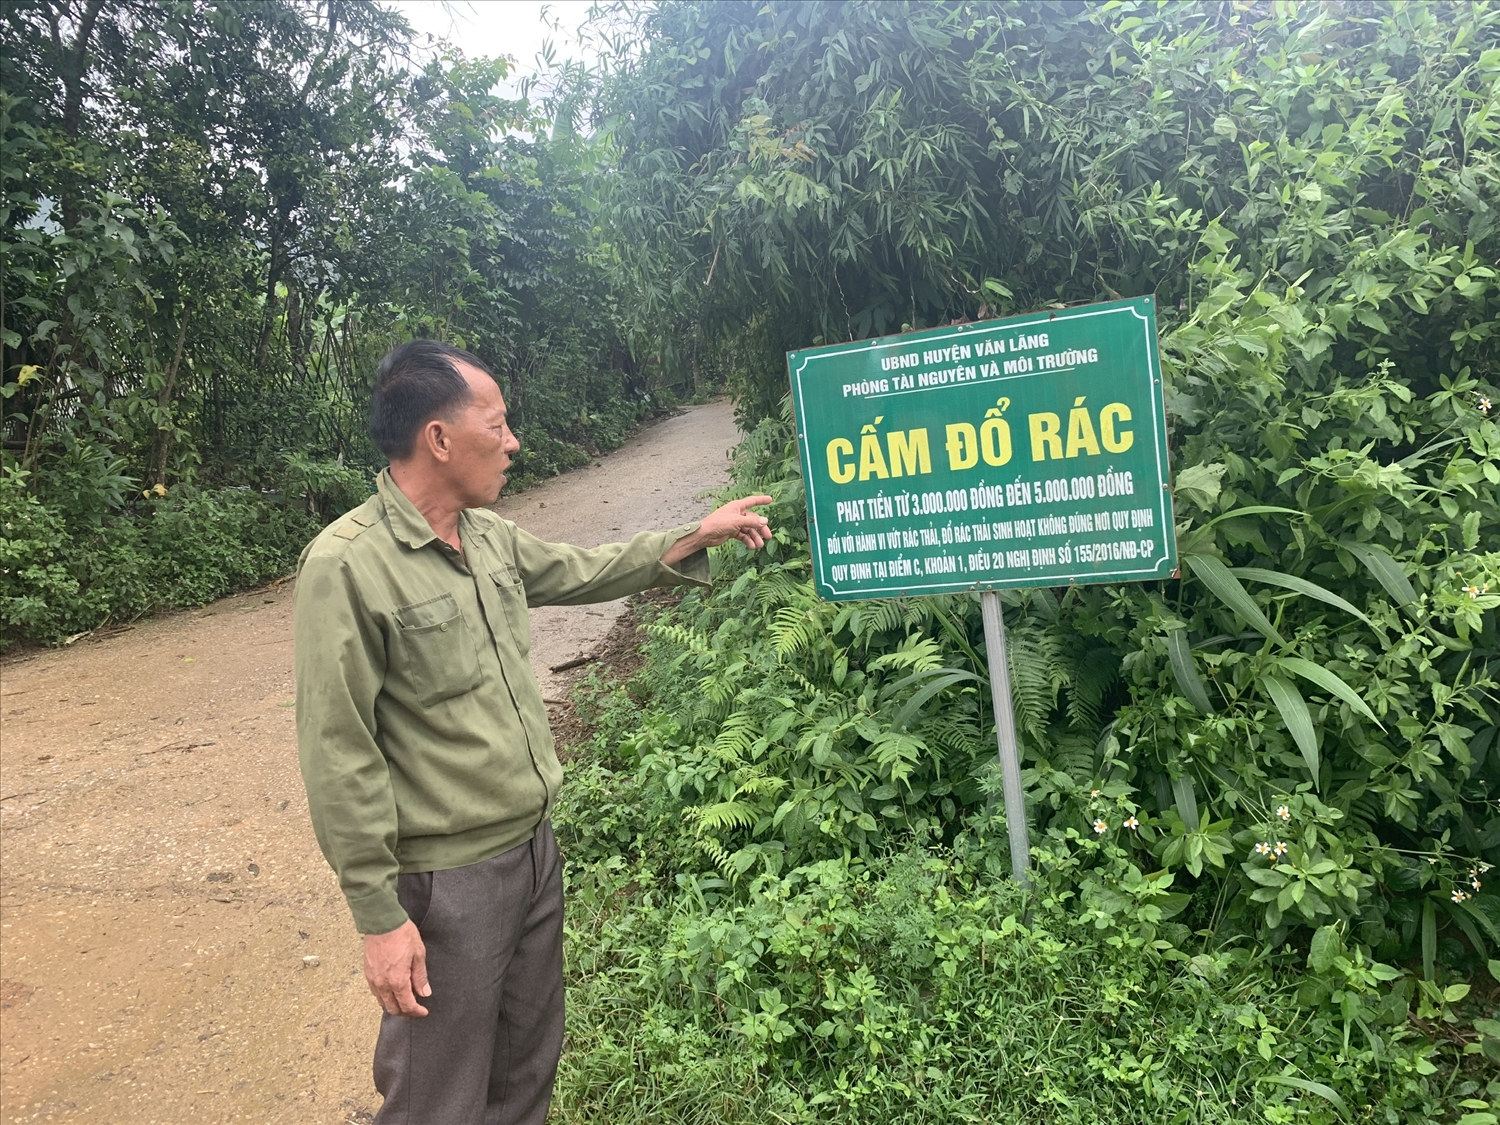 Ông Bế Văn Ly, Người có uy tín thôn Còn Bó, xã Thanh Long nâng niu, dựng lại tấm biển “Cấm đổ rác” để người dân dễ nhìn, góp phần nâng cao ý thức Nhân dân trong bảo vệ môi trường